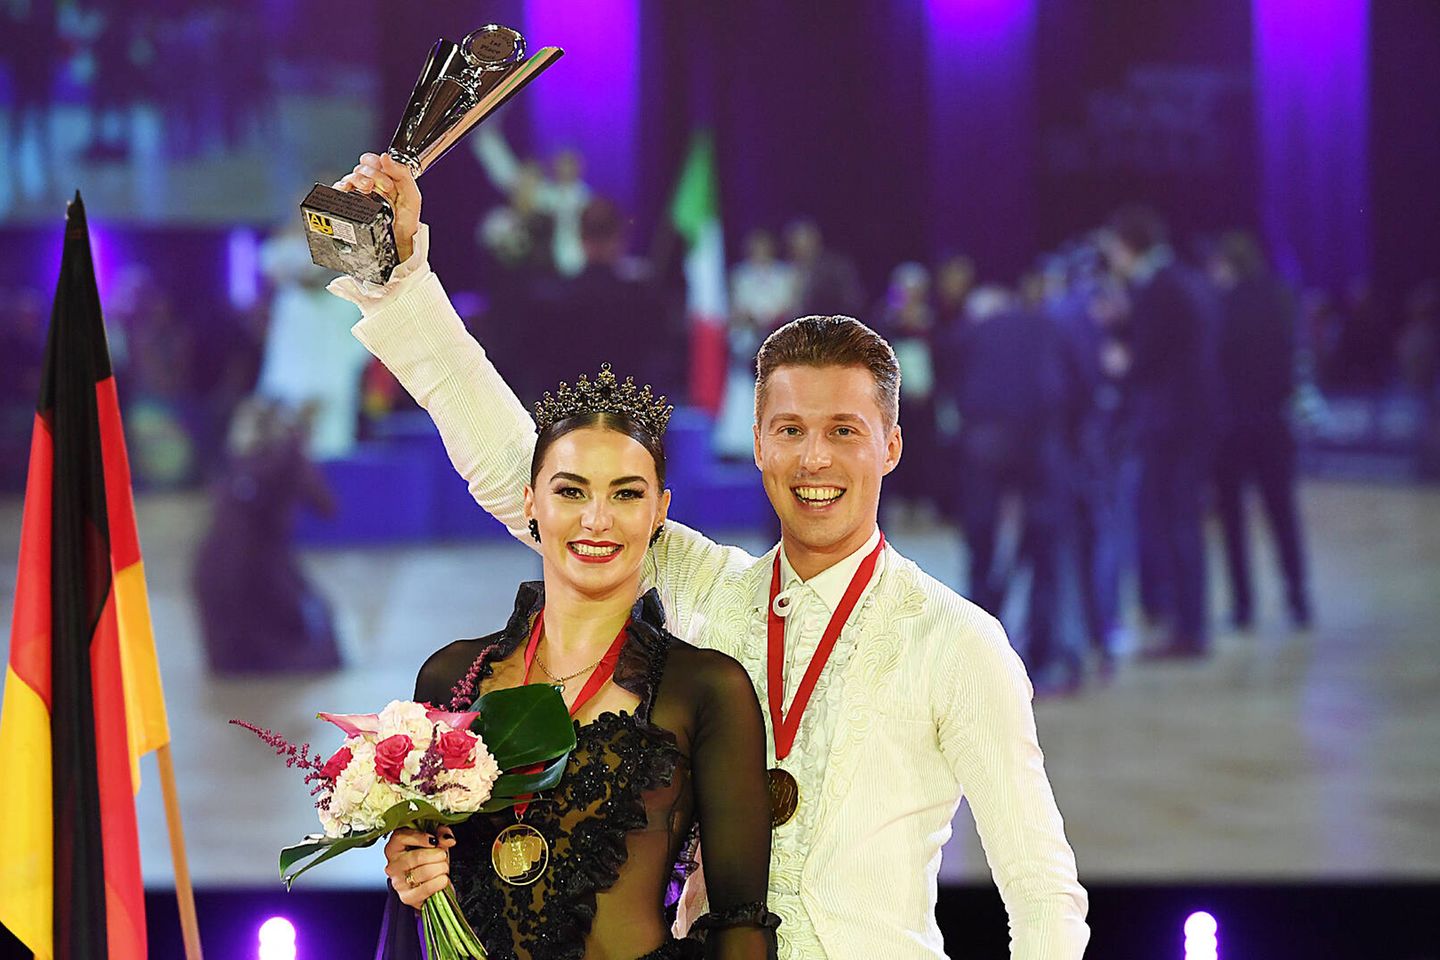 Renata und Valentin Lusin holten am Samstag, 23. Oktober 2021, bei der Tanz-Weltmeisterschaft Latein und Showdance Standard in Leipzig Gold.